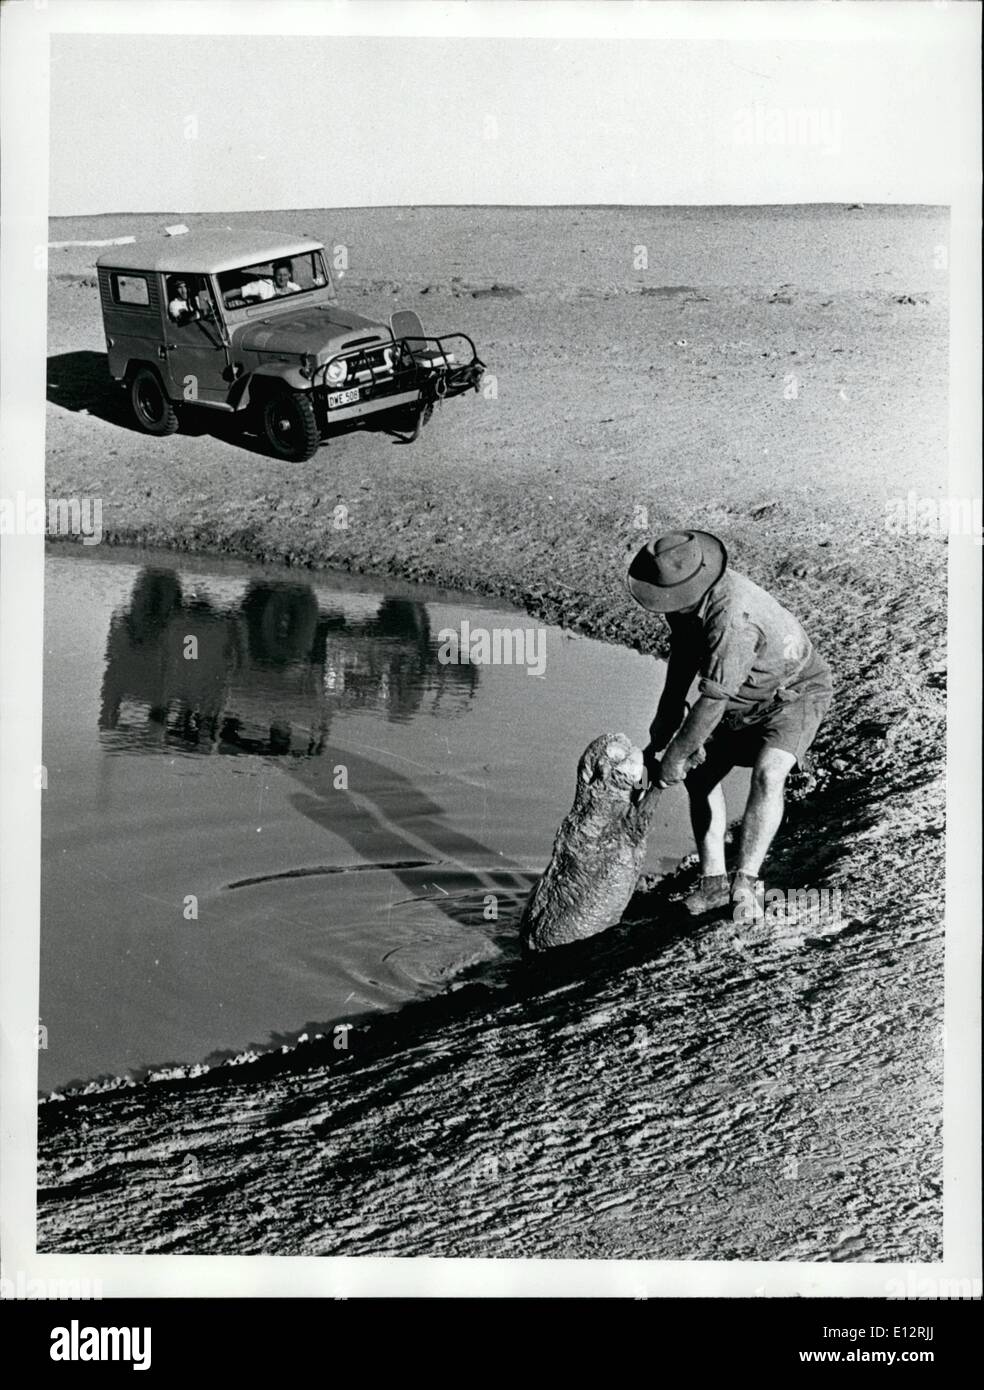 Febrero 25, 2012 - Muere la oveja sacó no infestar el agua Foto de stock